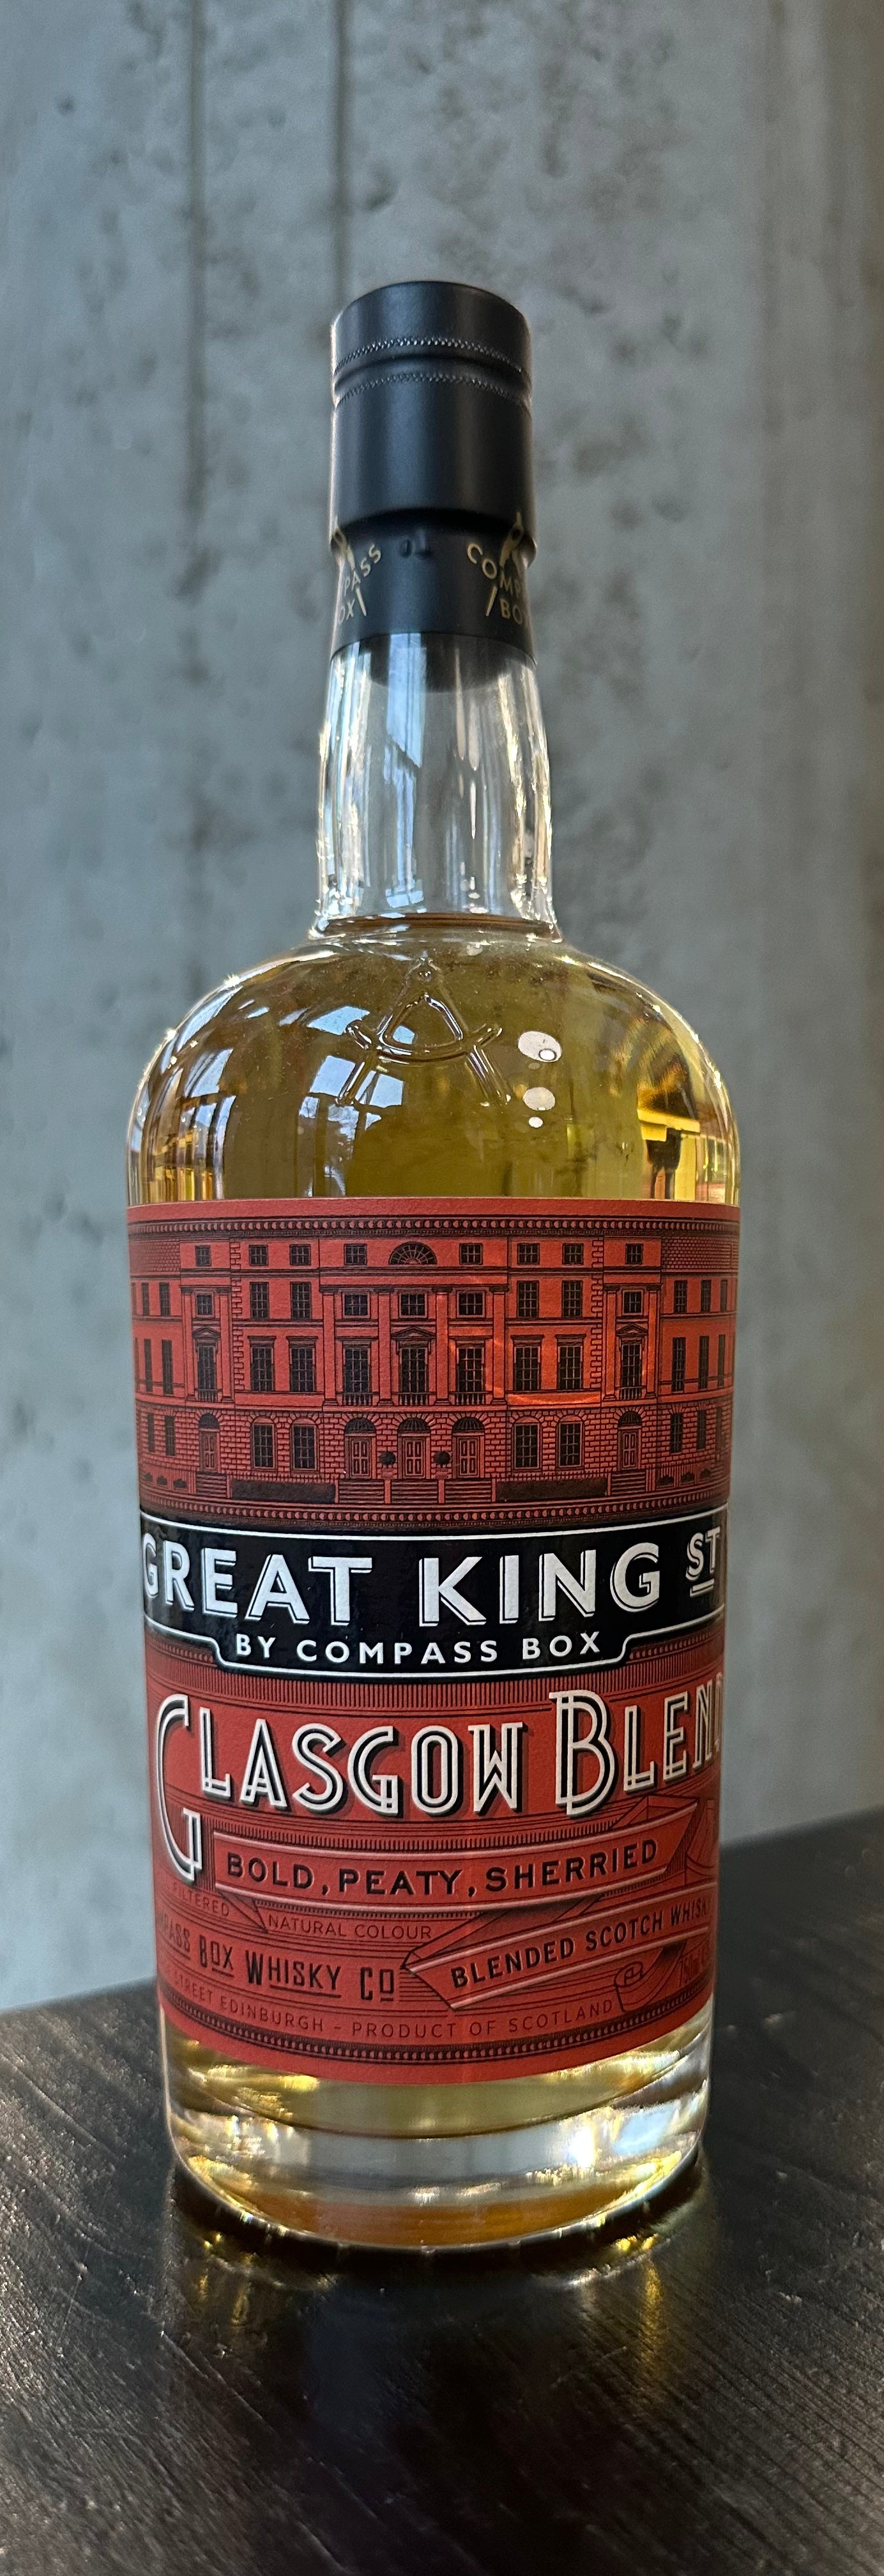 Great King Street Scotch "Glasgow Blend"